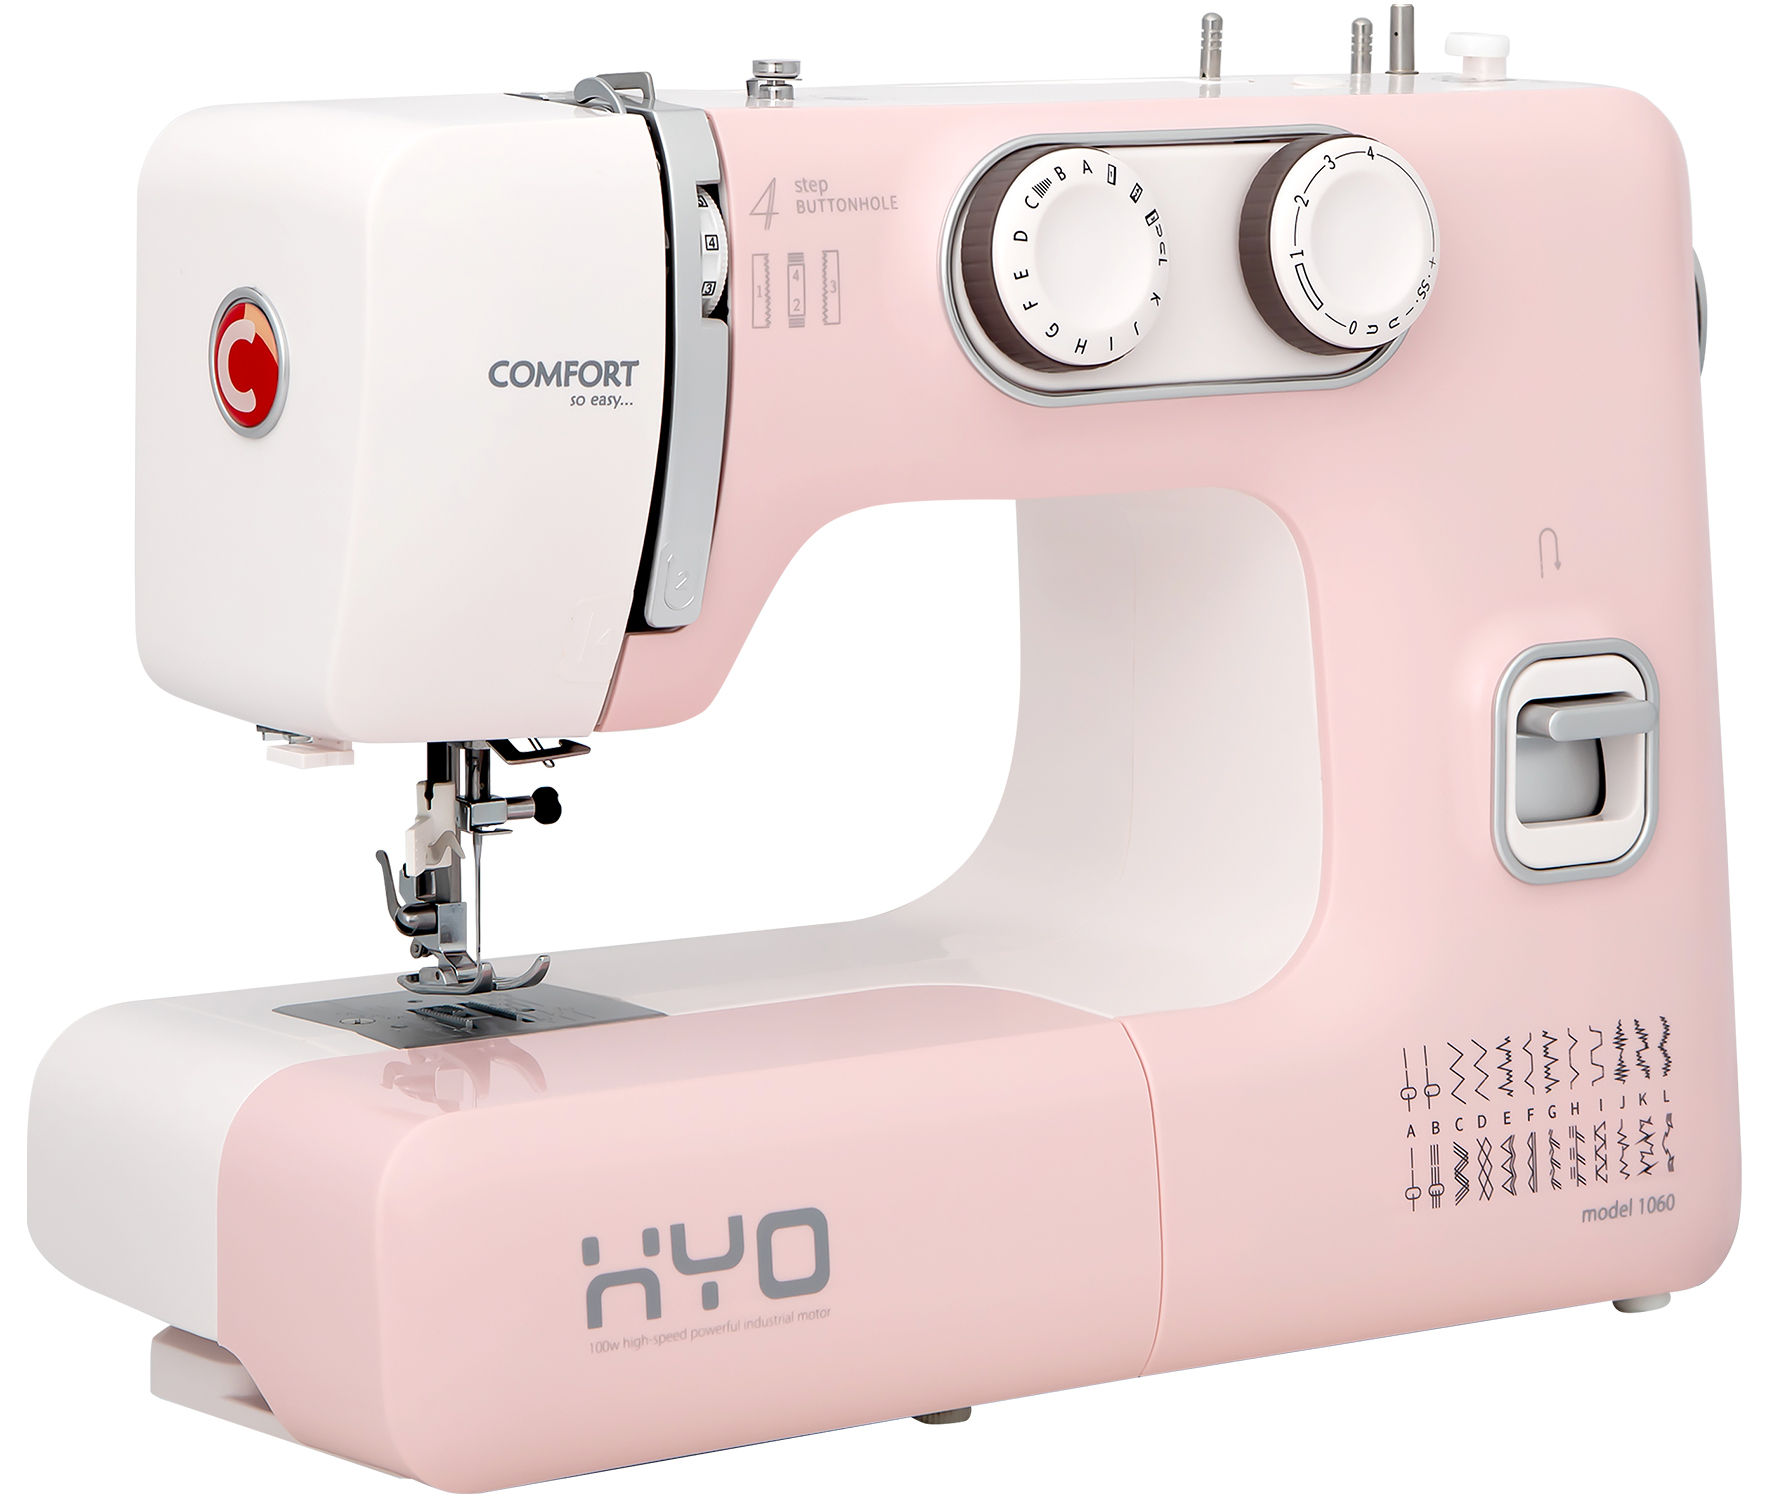 Швейная машина COMFORT 1060 белый, розовый швейная машина chayka 740 белый розовый